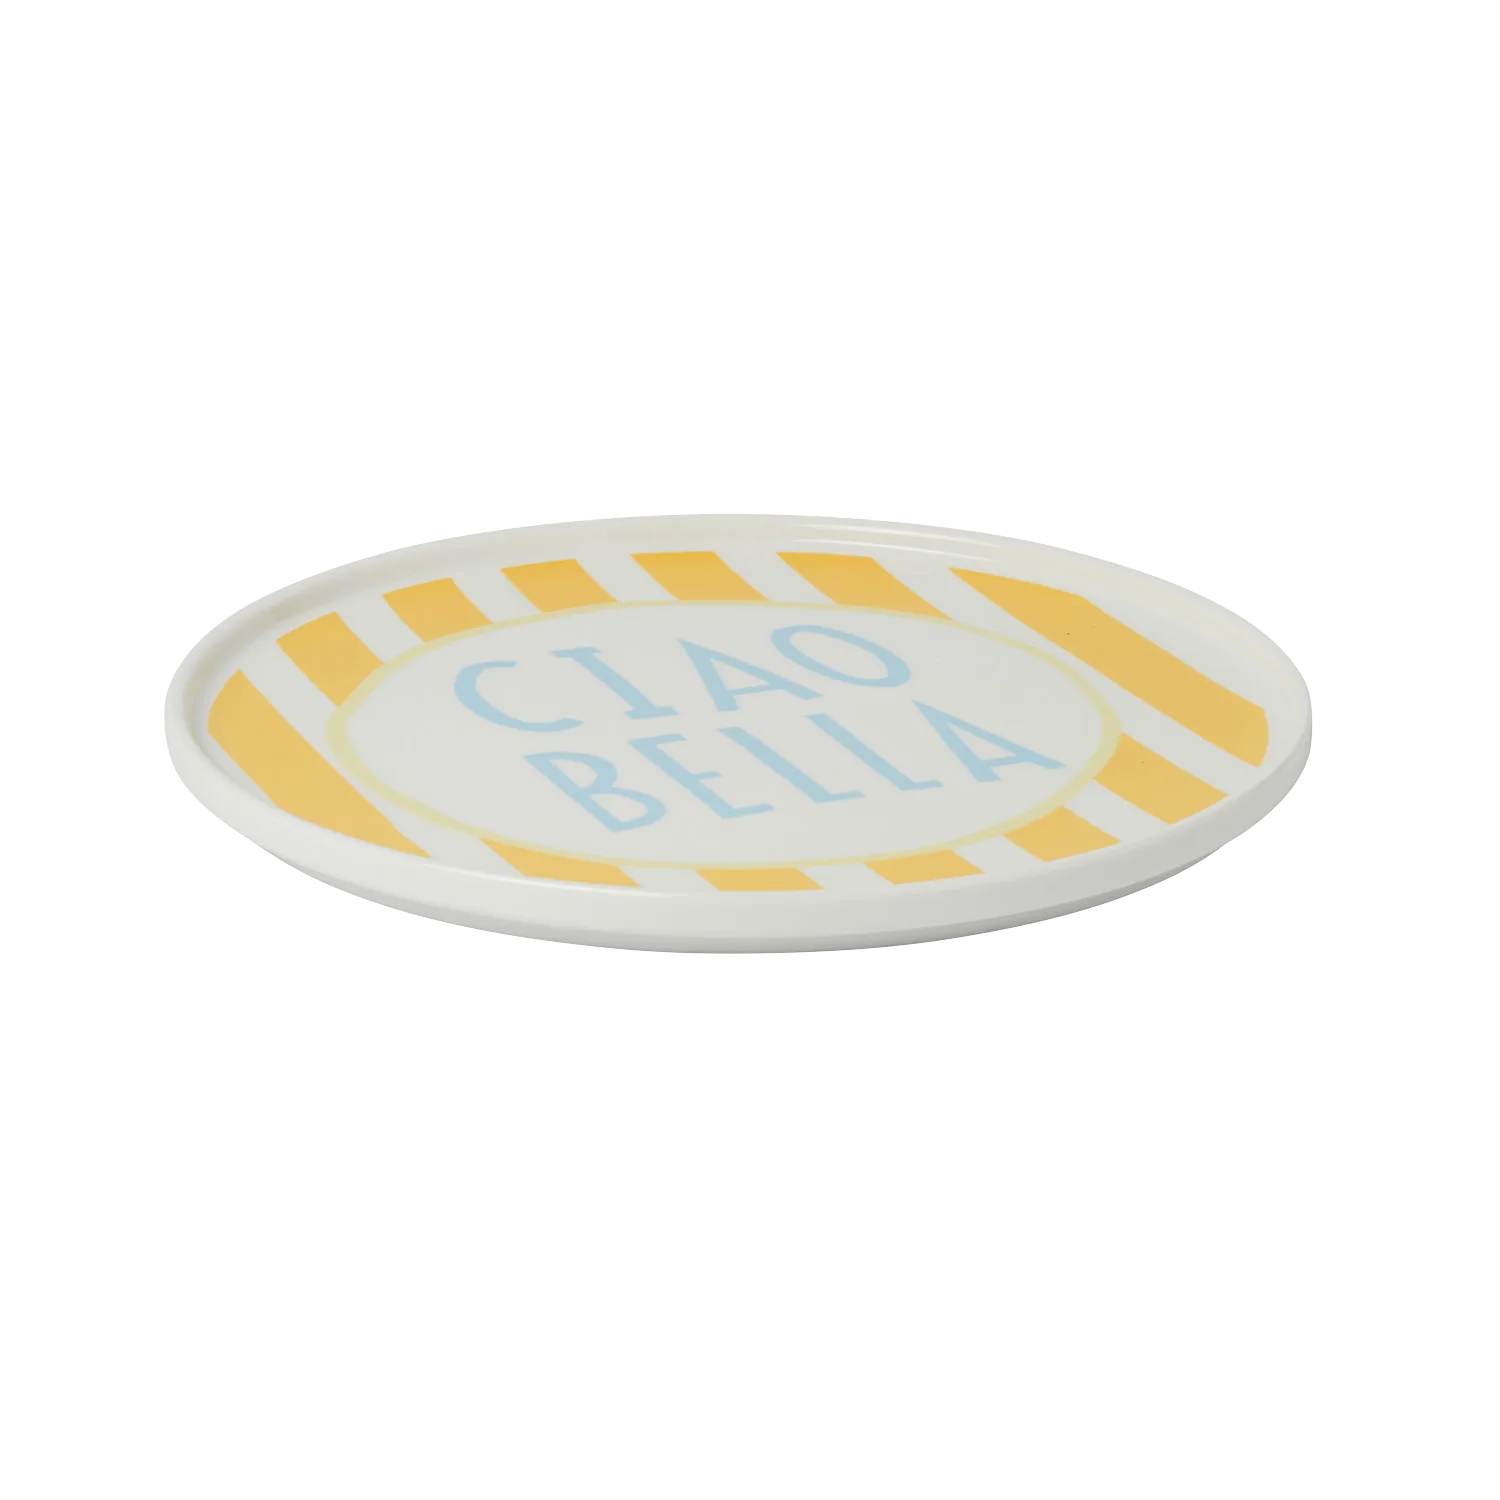 Yellow Stripe Ciao Bella Plate